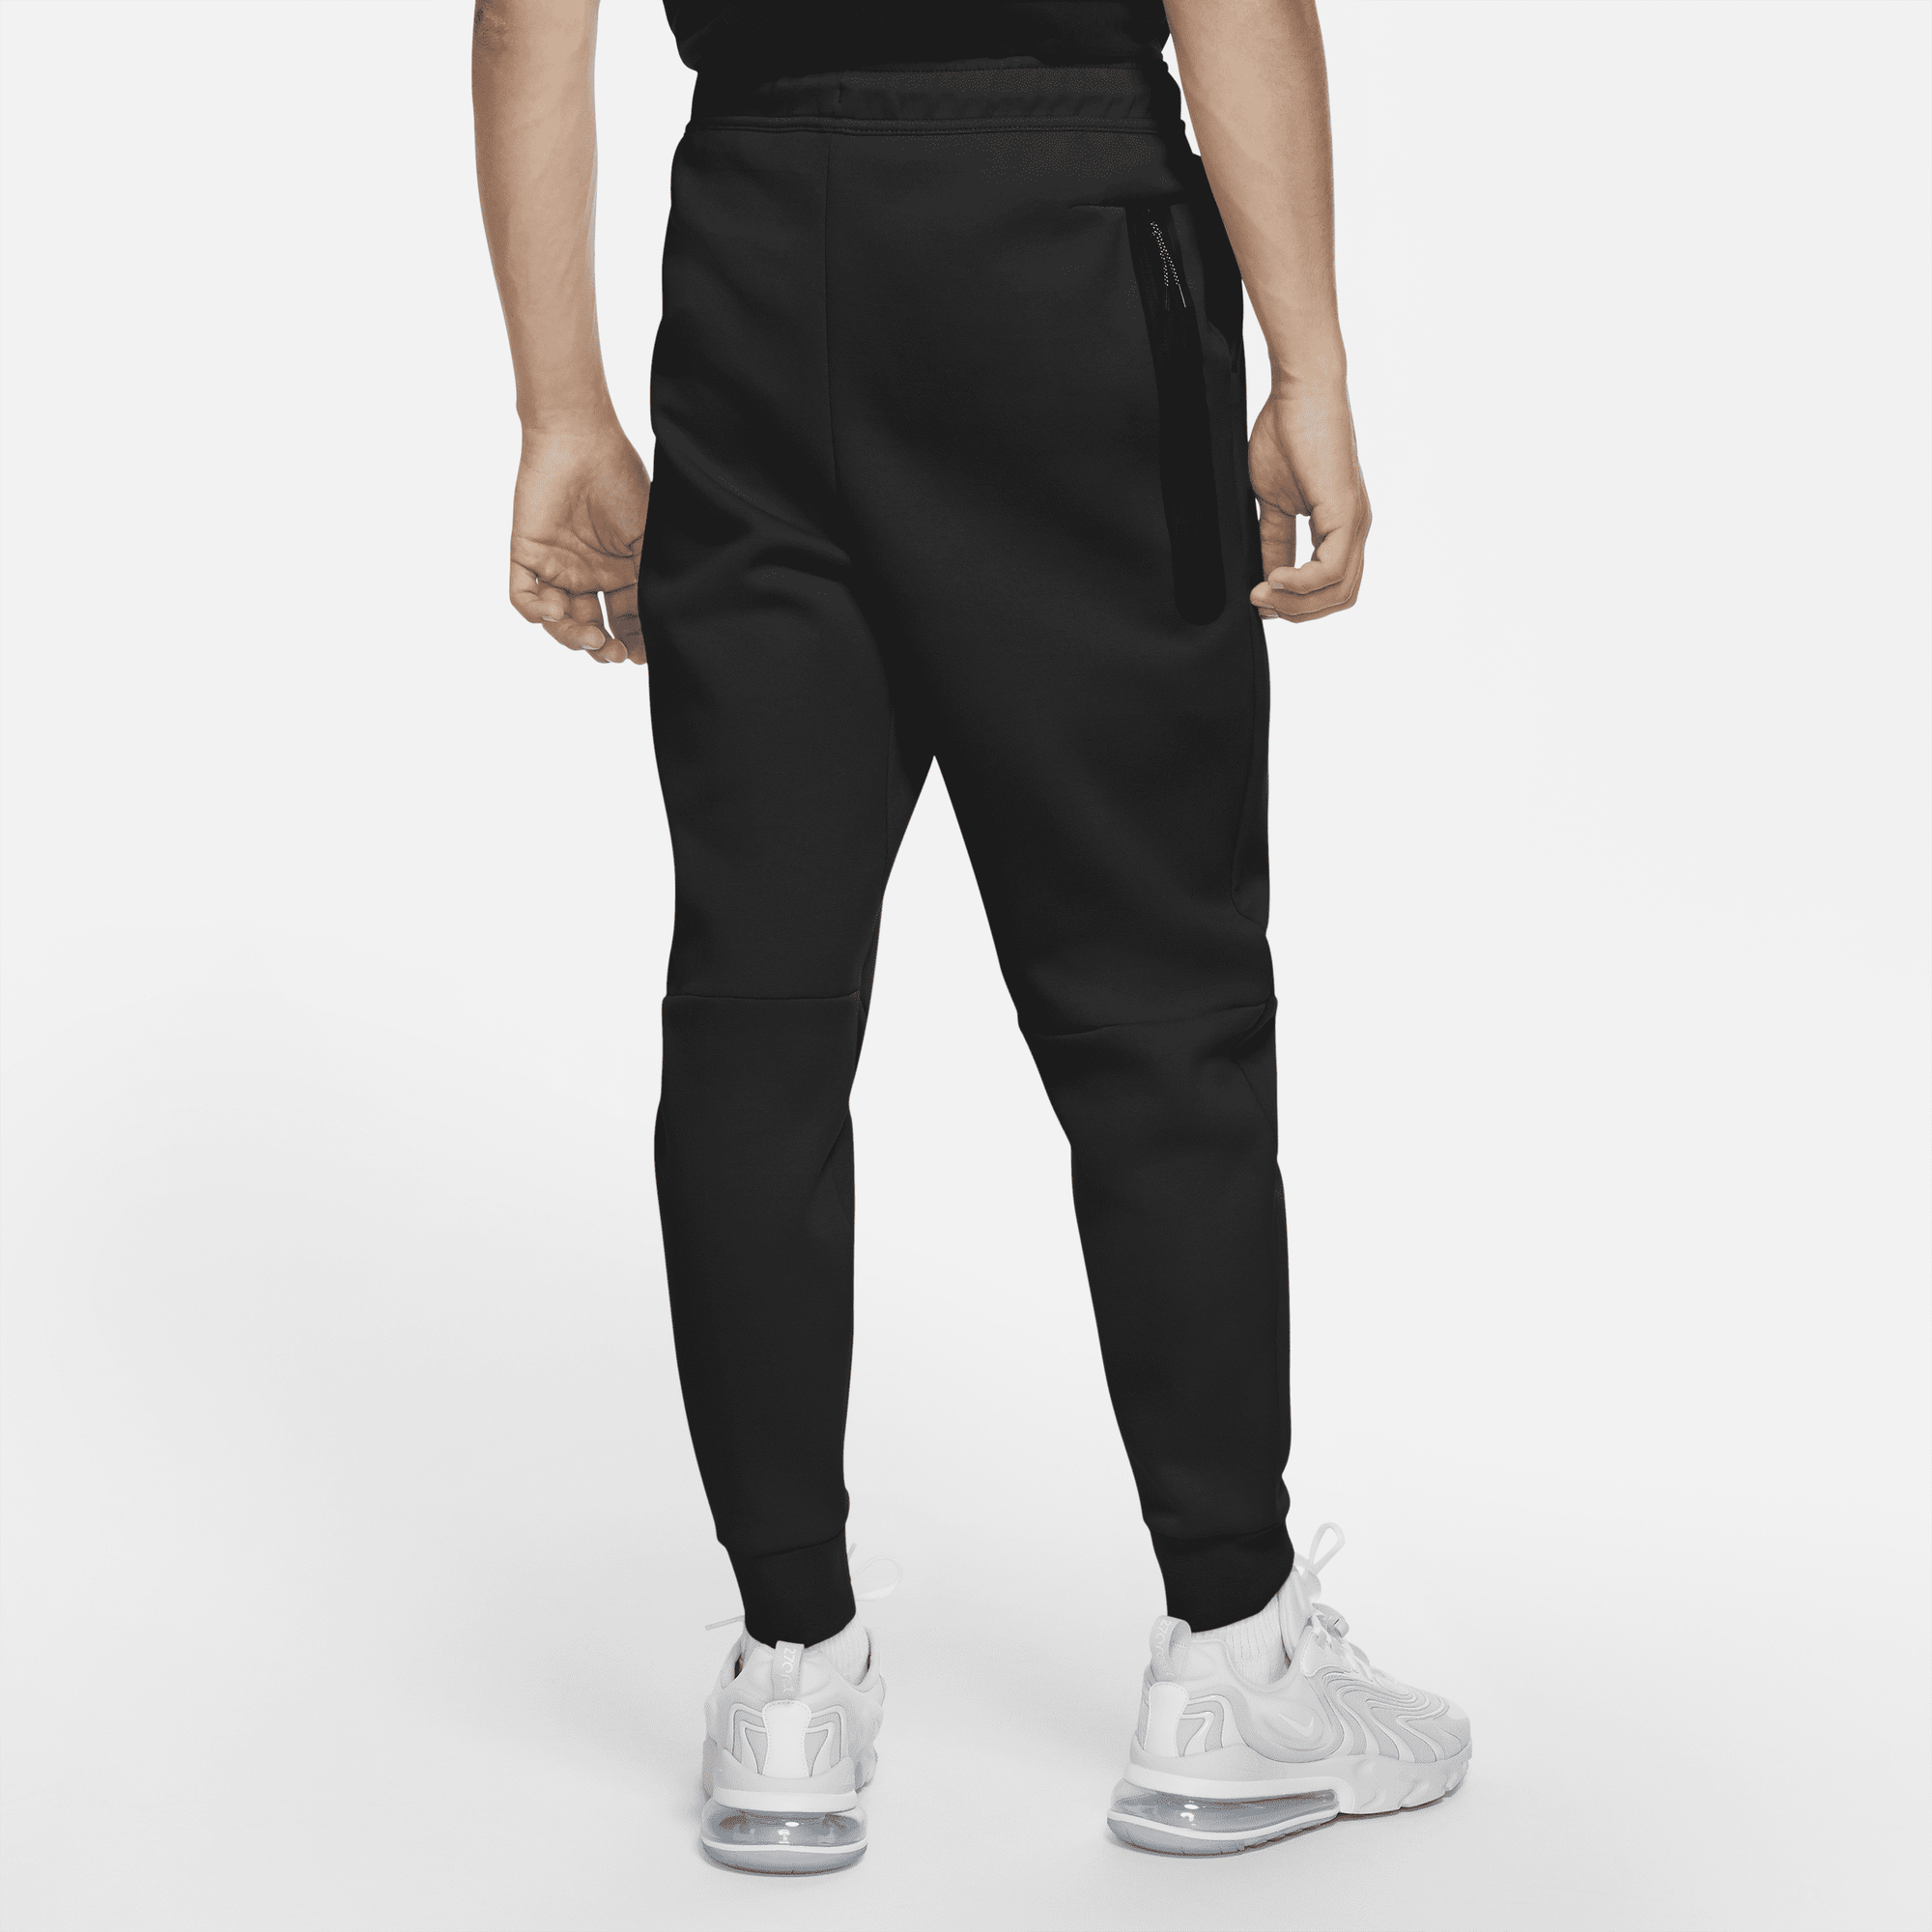 Buy Nike Sportswear Tech Fleece Men's Joggers | Nike UAE Official